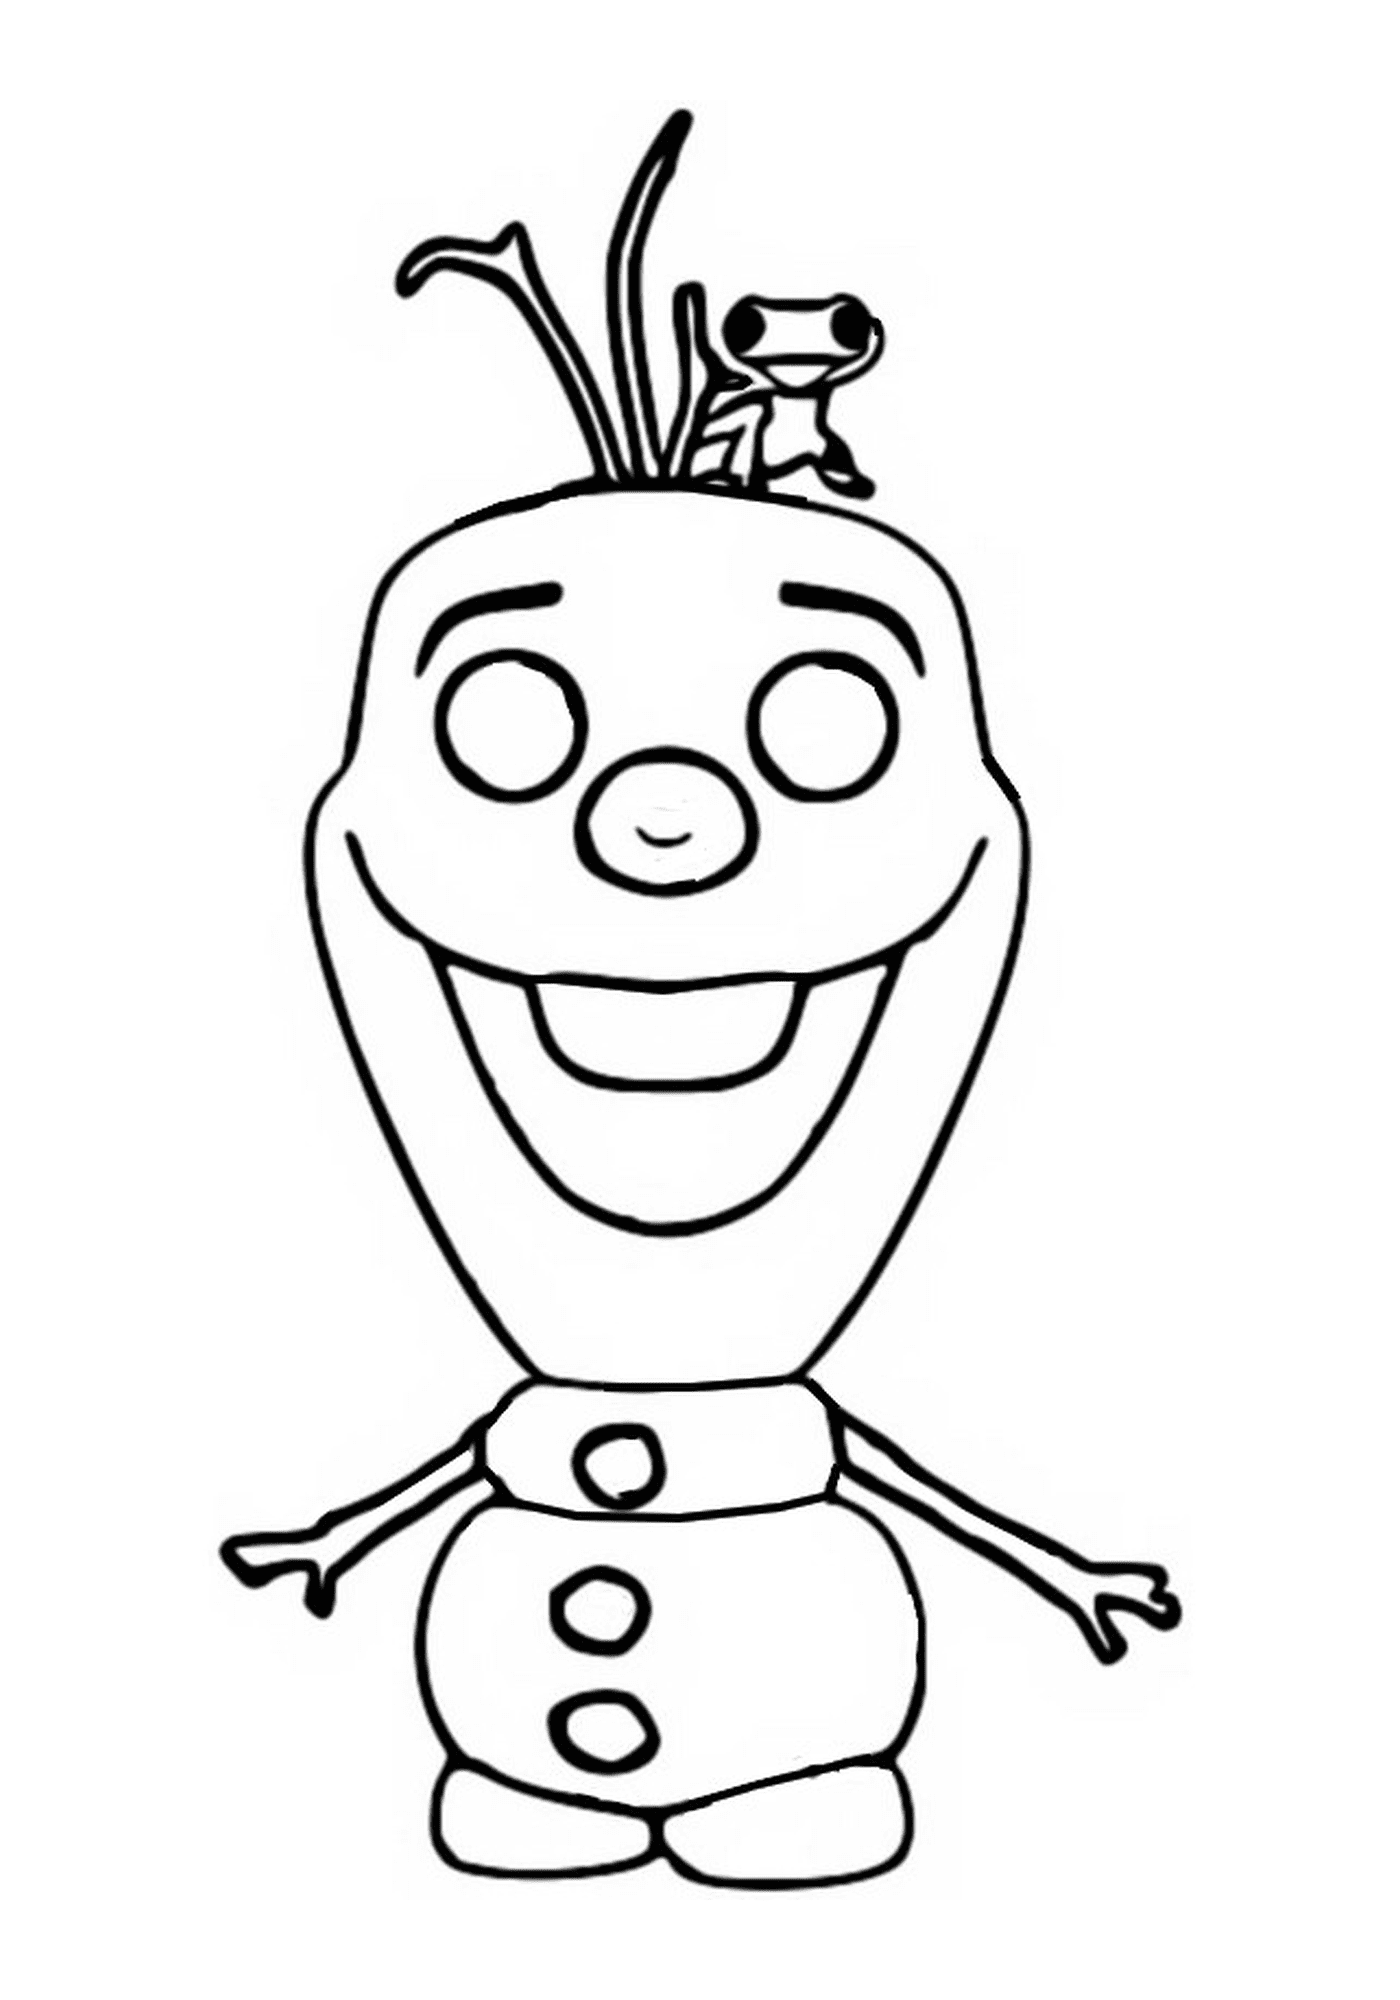  Olaf, Frozen 2, personaje de dibujos animados sonriendo 